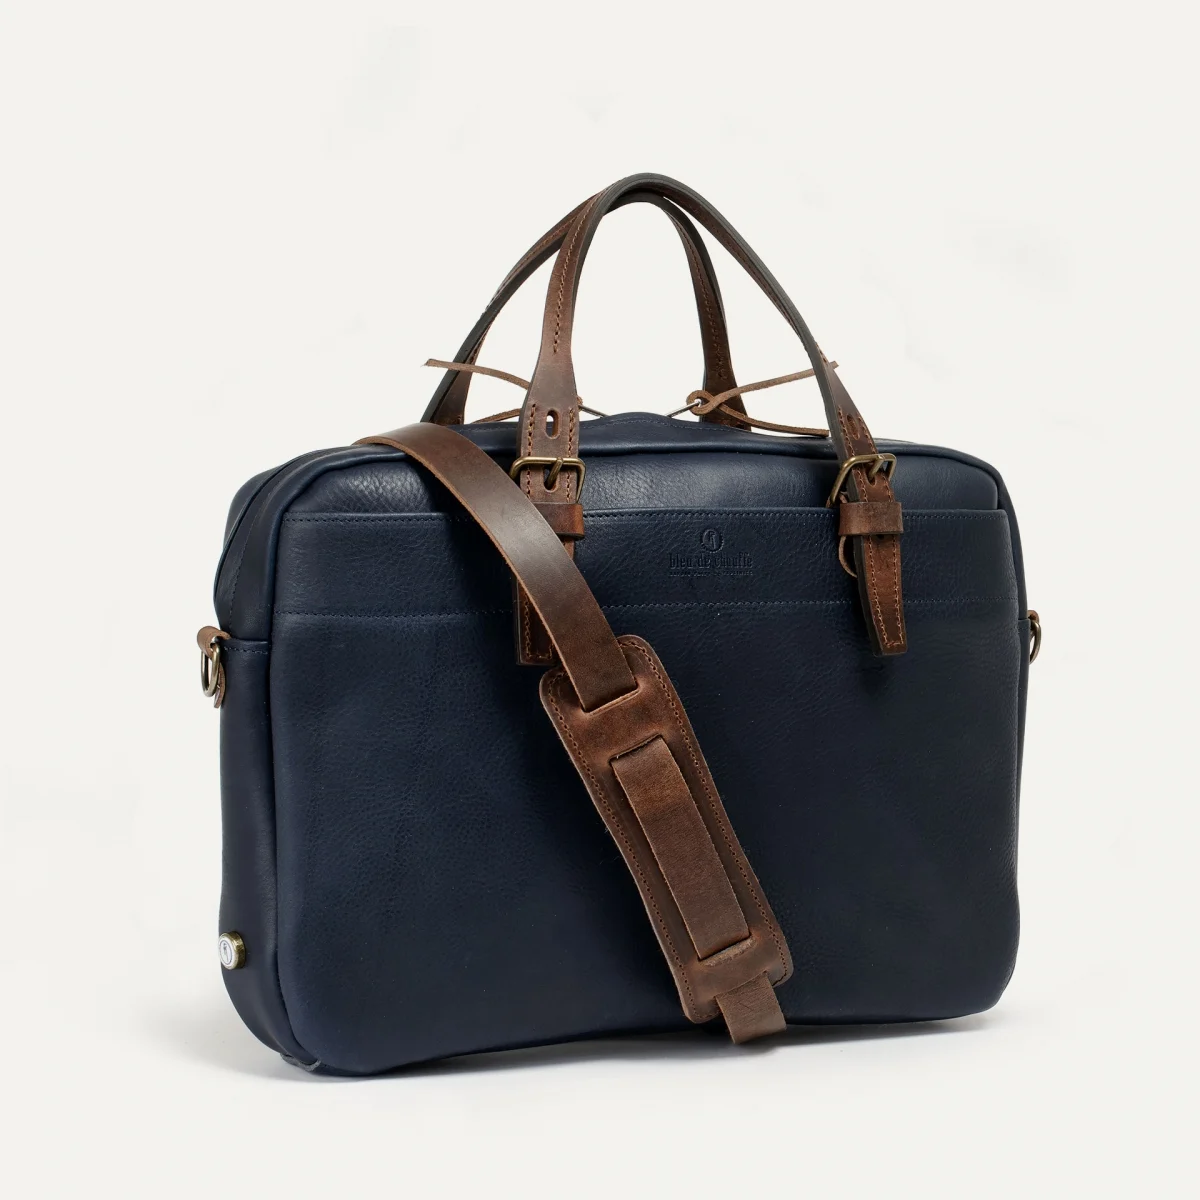 Bleu de Chauffe Folder Business Bag - Navy